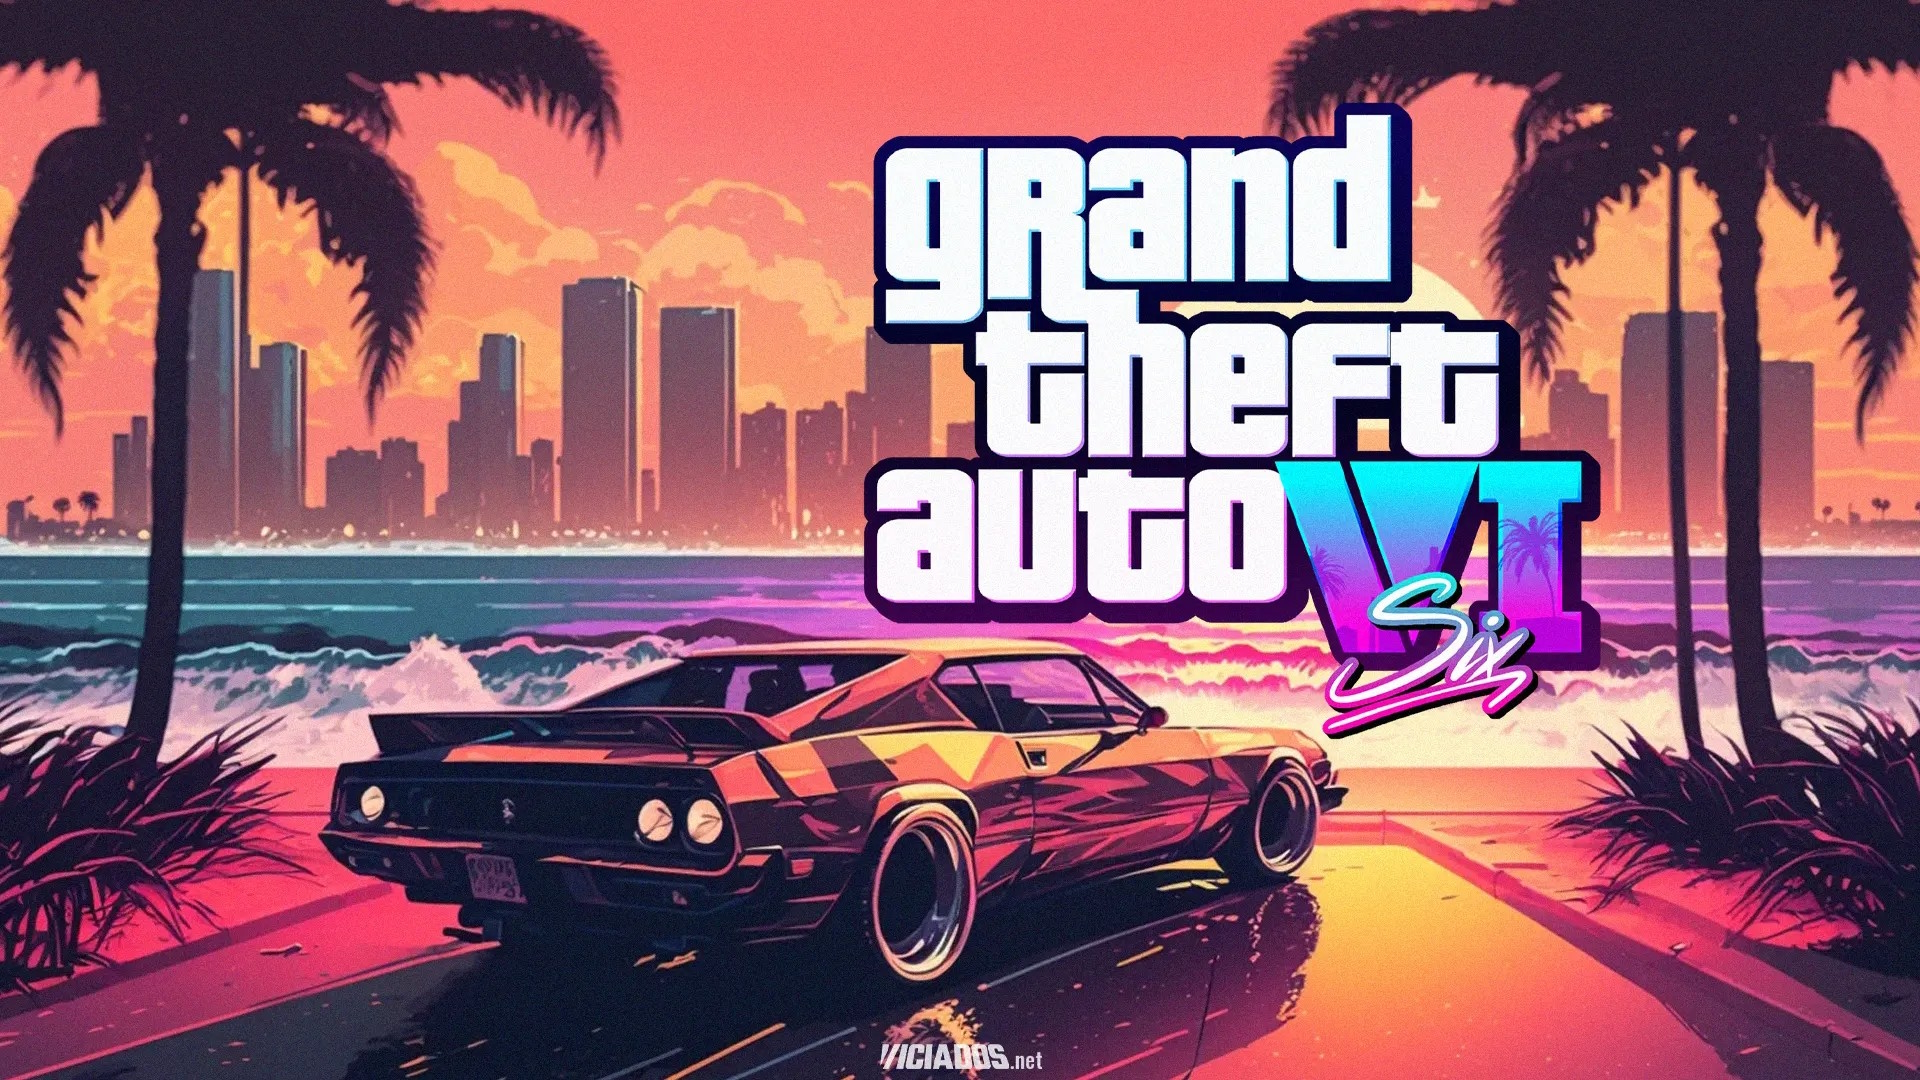 Tecnologia/GTA 6: A Rockstar Games anuncia (finalmente) a nova obra do franchise “Grand Theft Auto